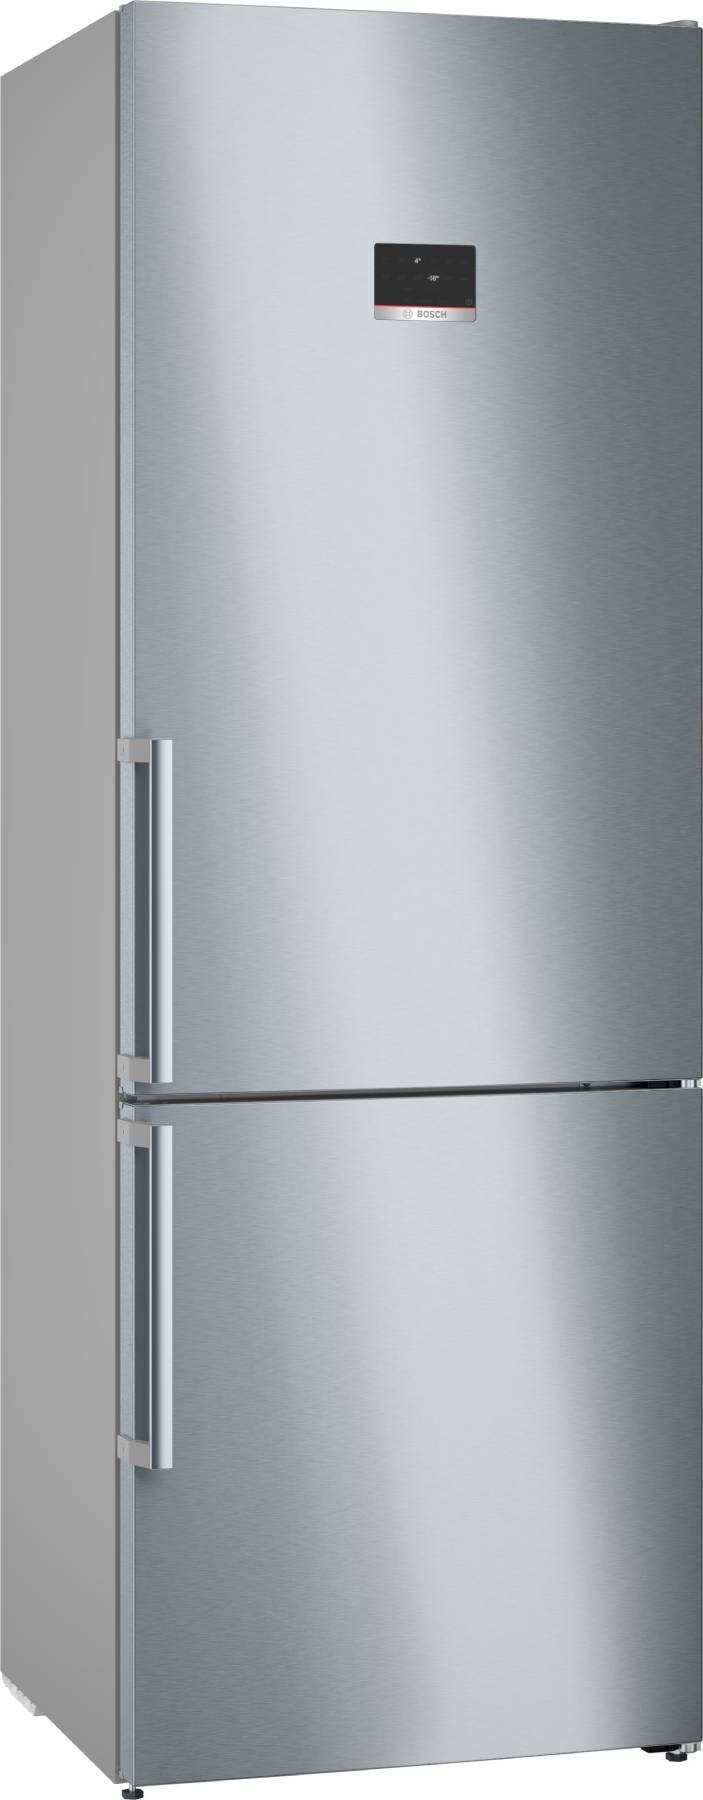 Promotion réfrigérateur Haier 80cm inox sans distributeur